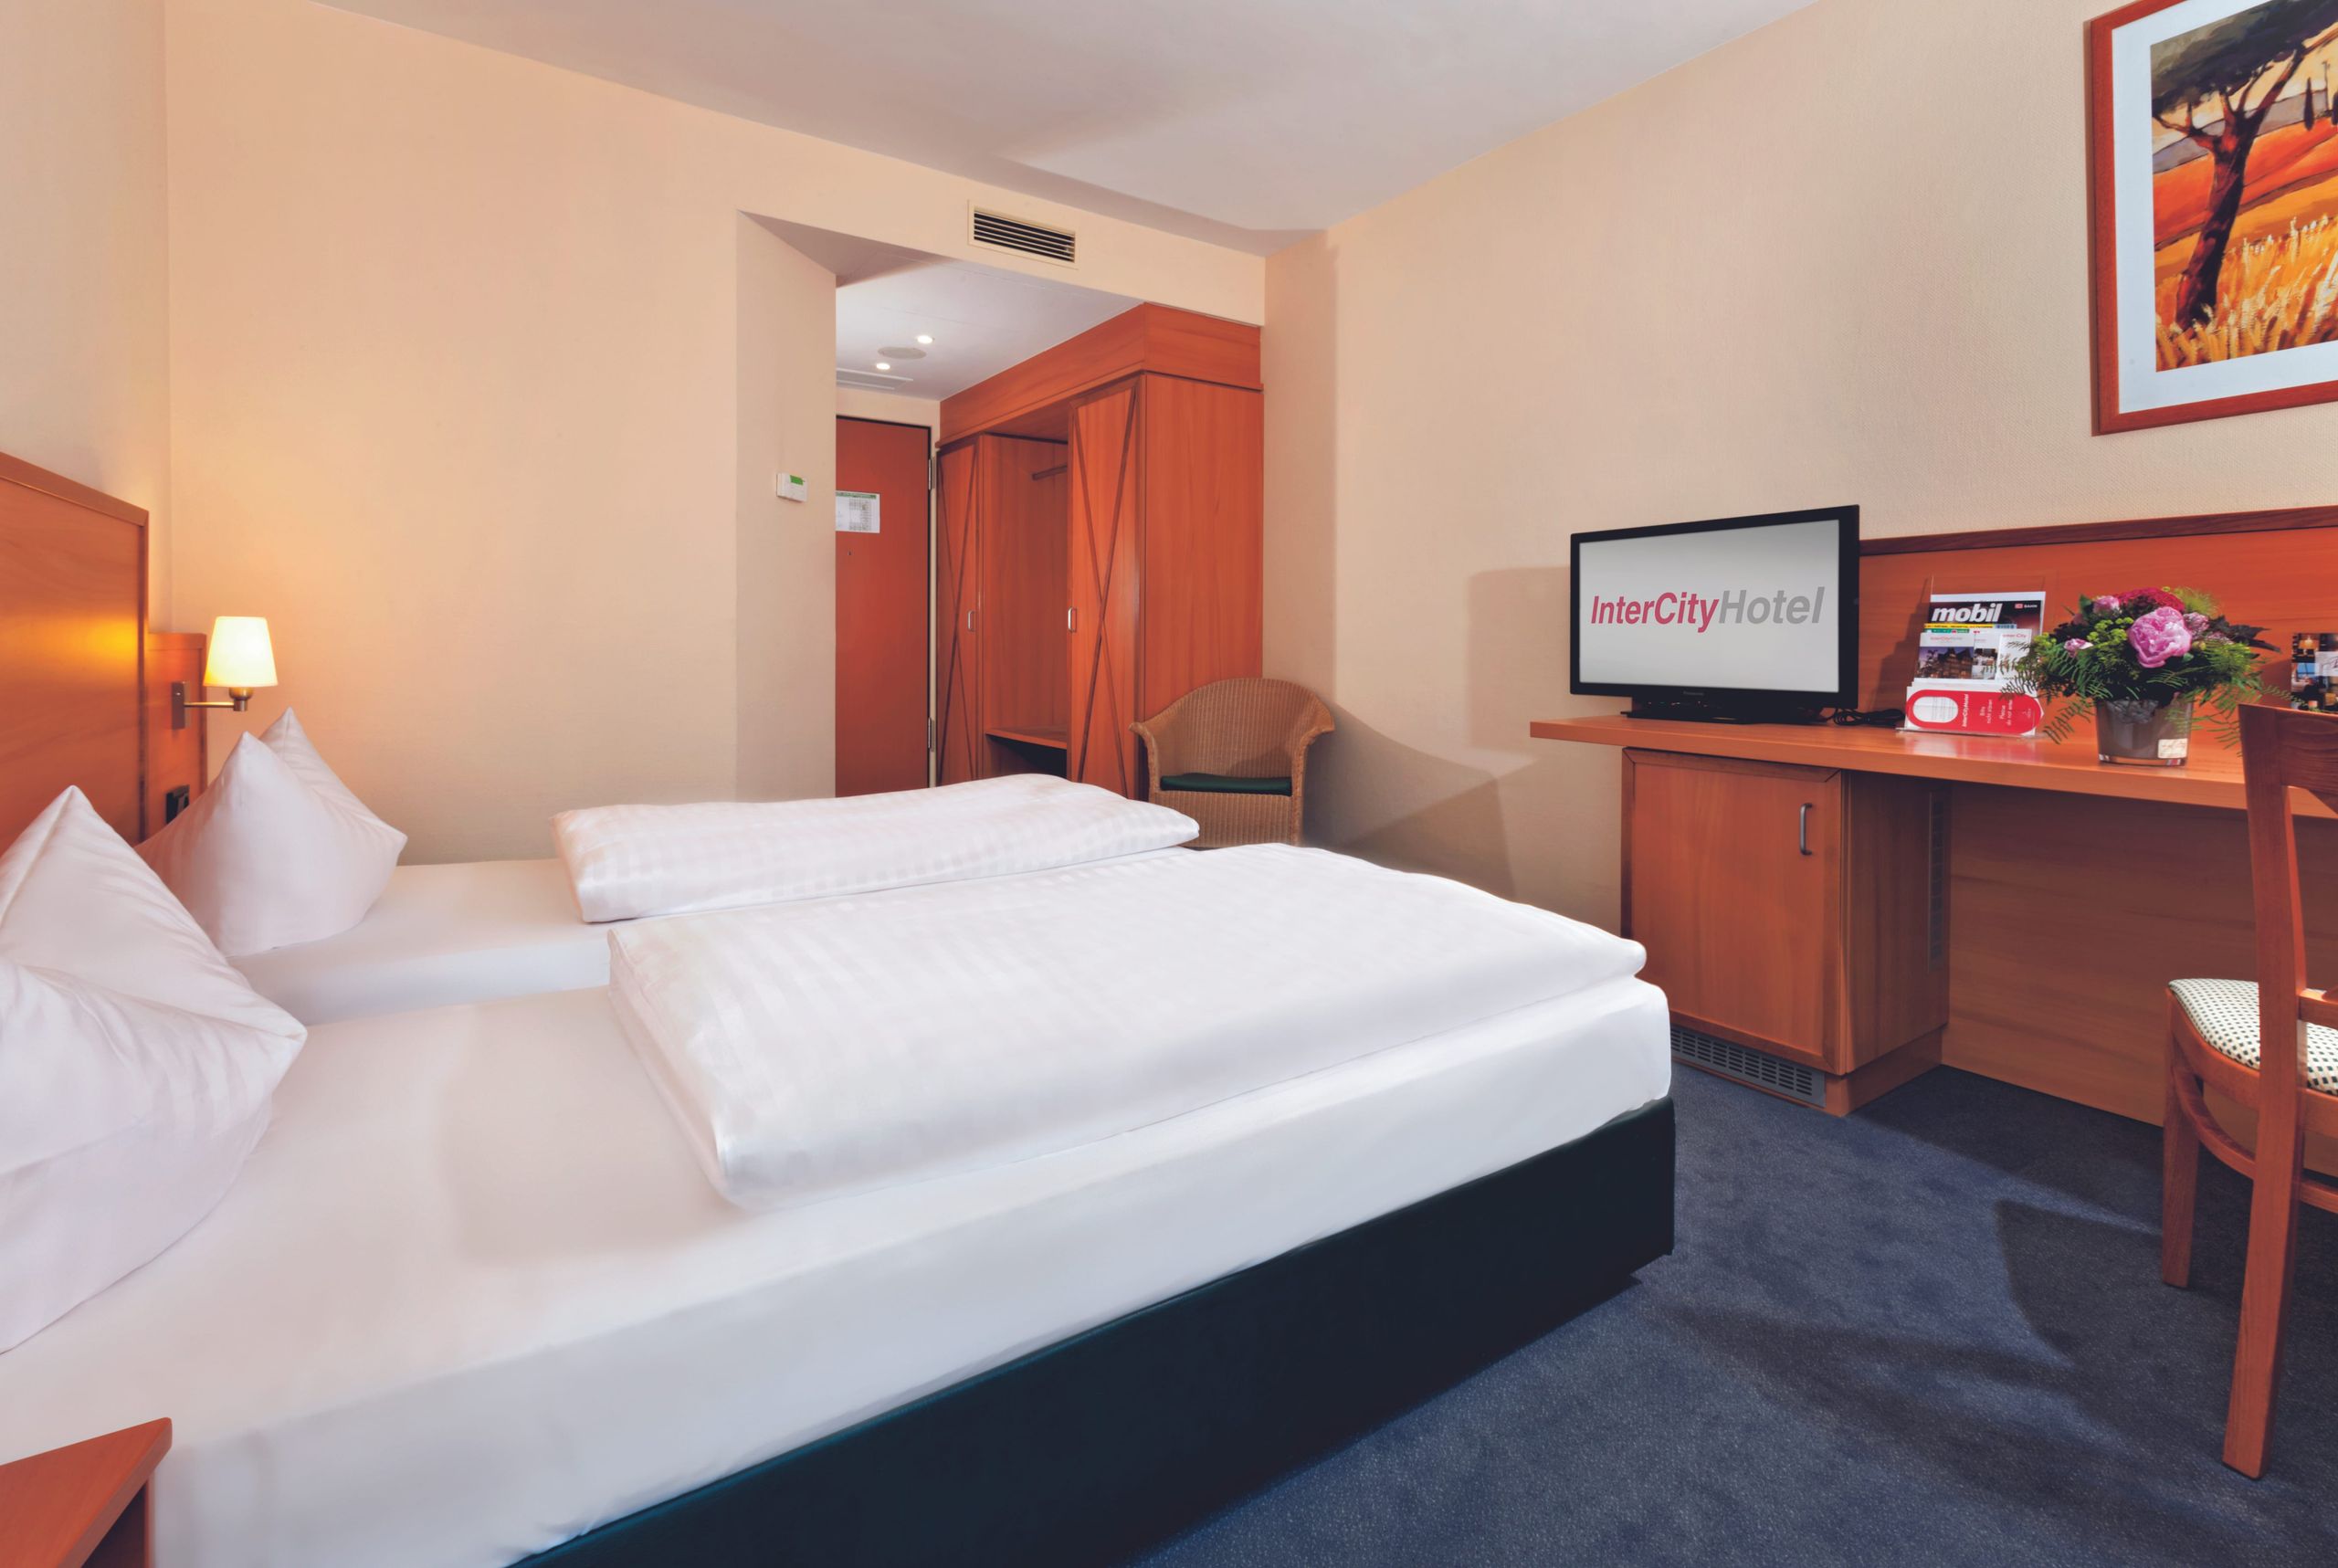 IntercityHotel Bremen – standard room twinbed